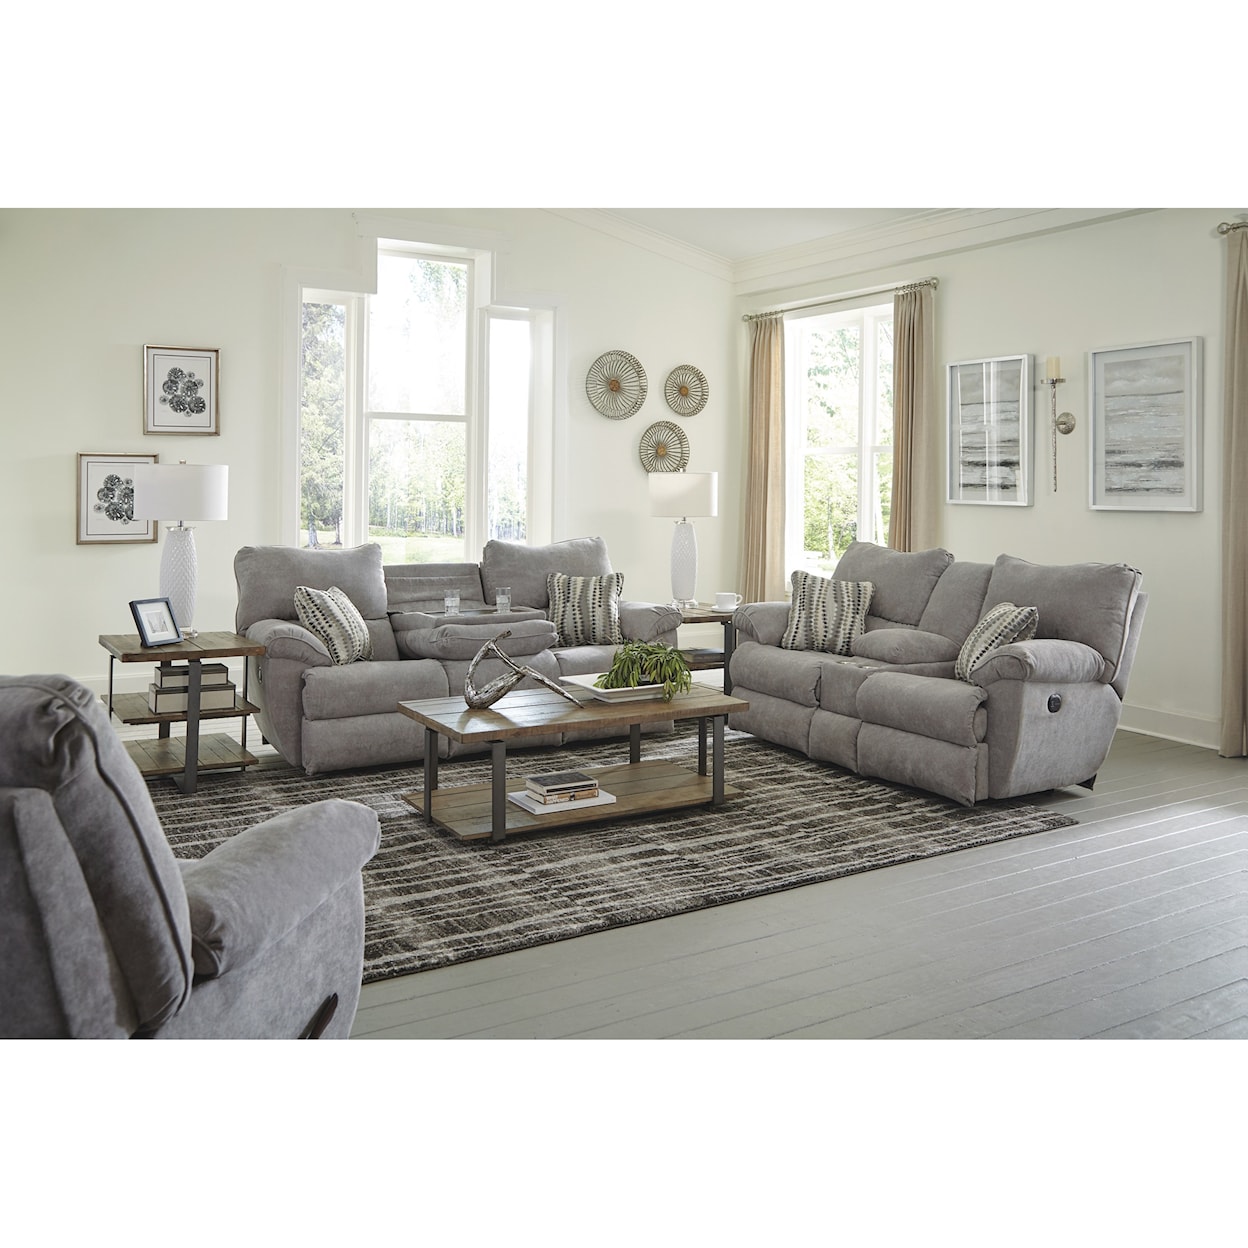 Carolina Furniture 241 Sadler Reclining Sofa